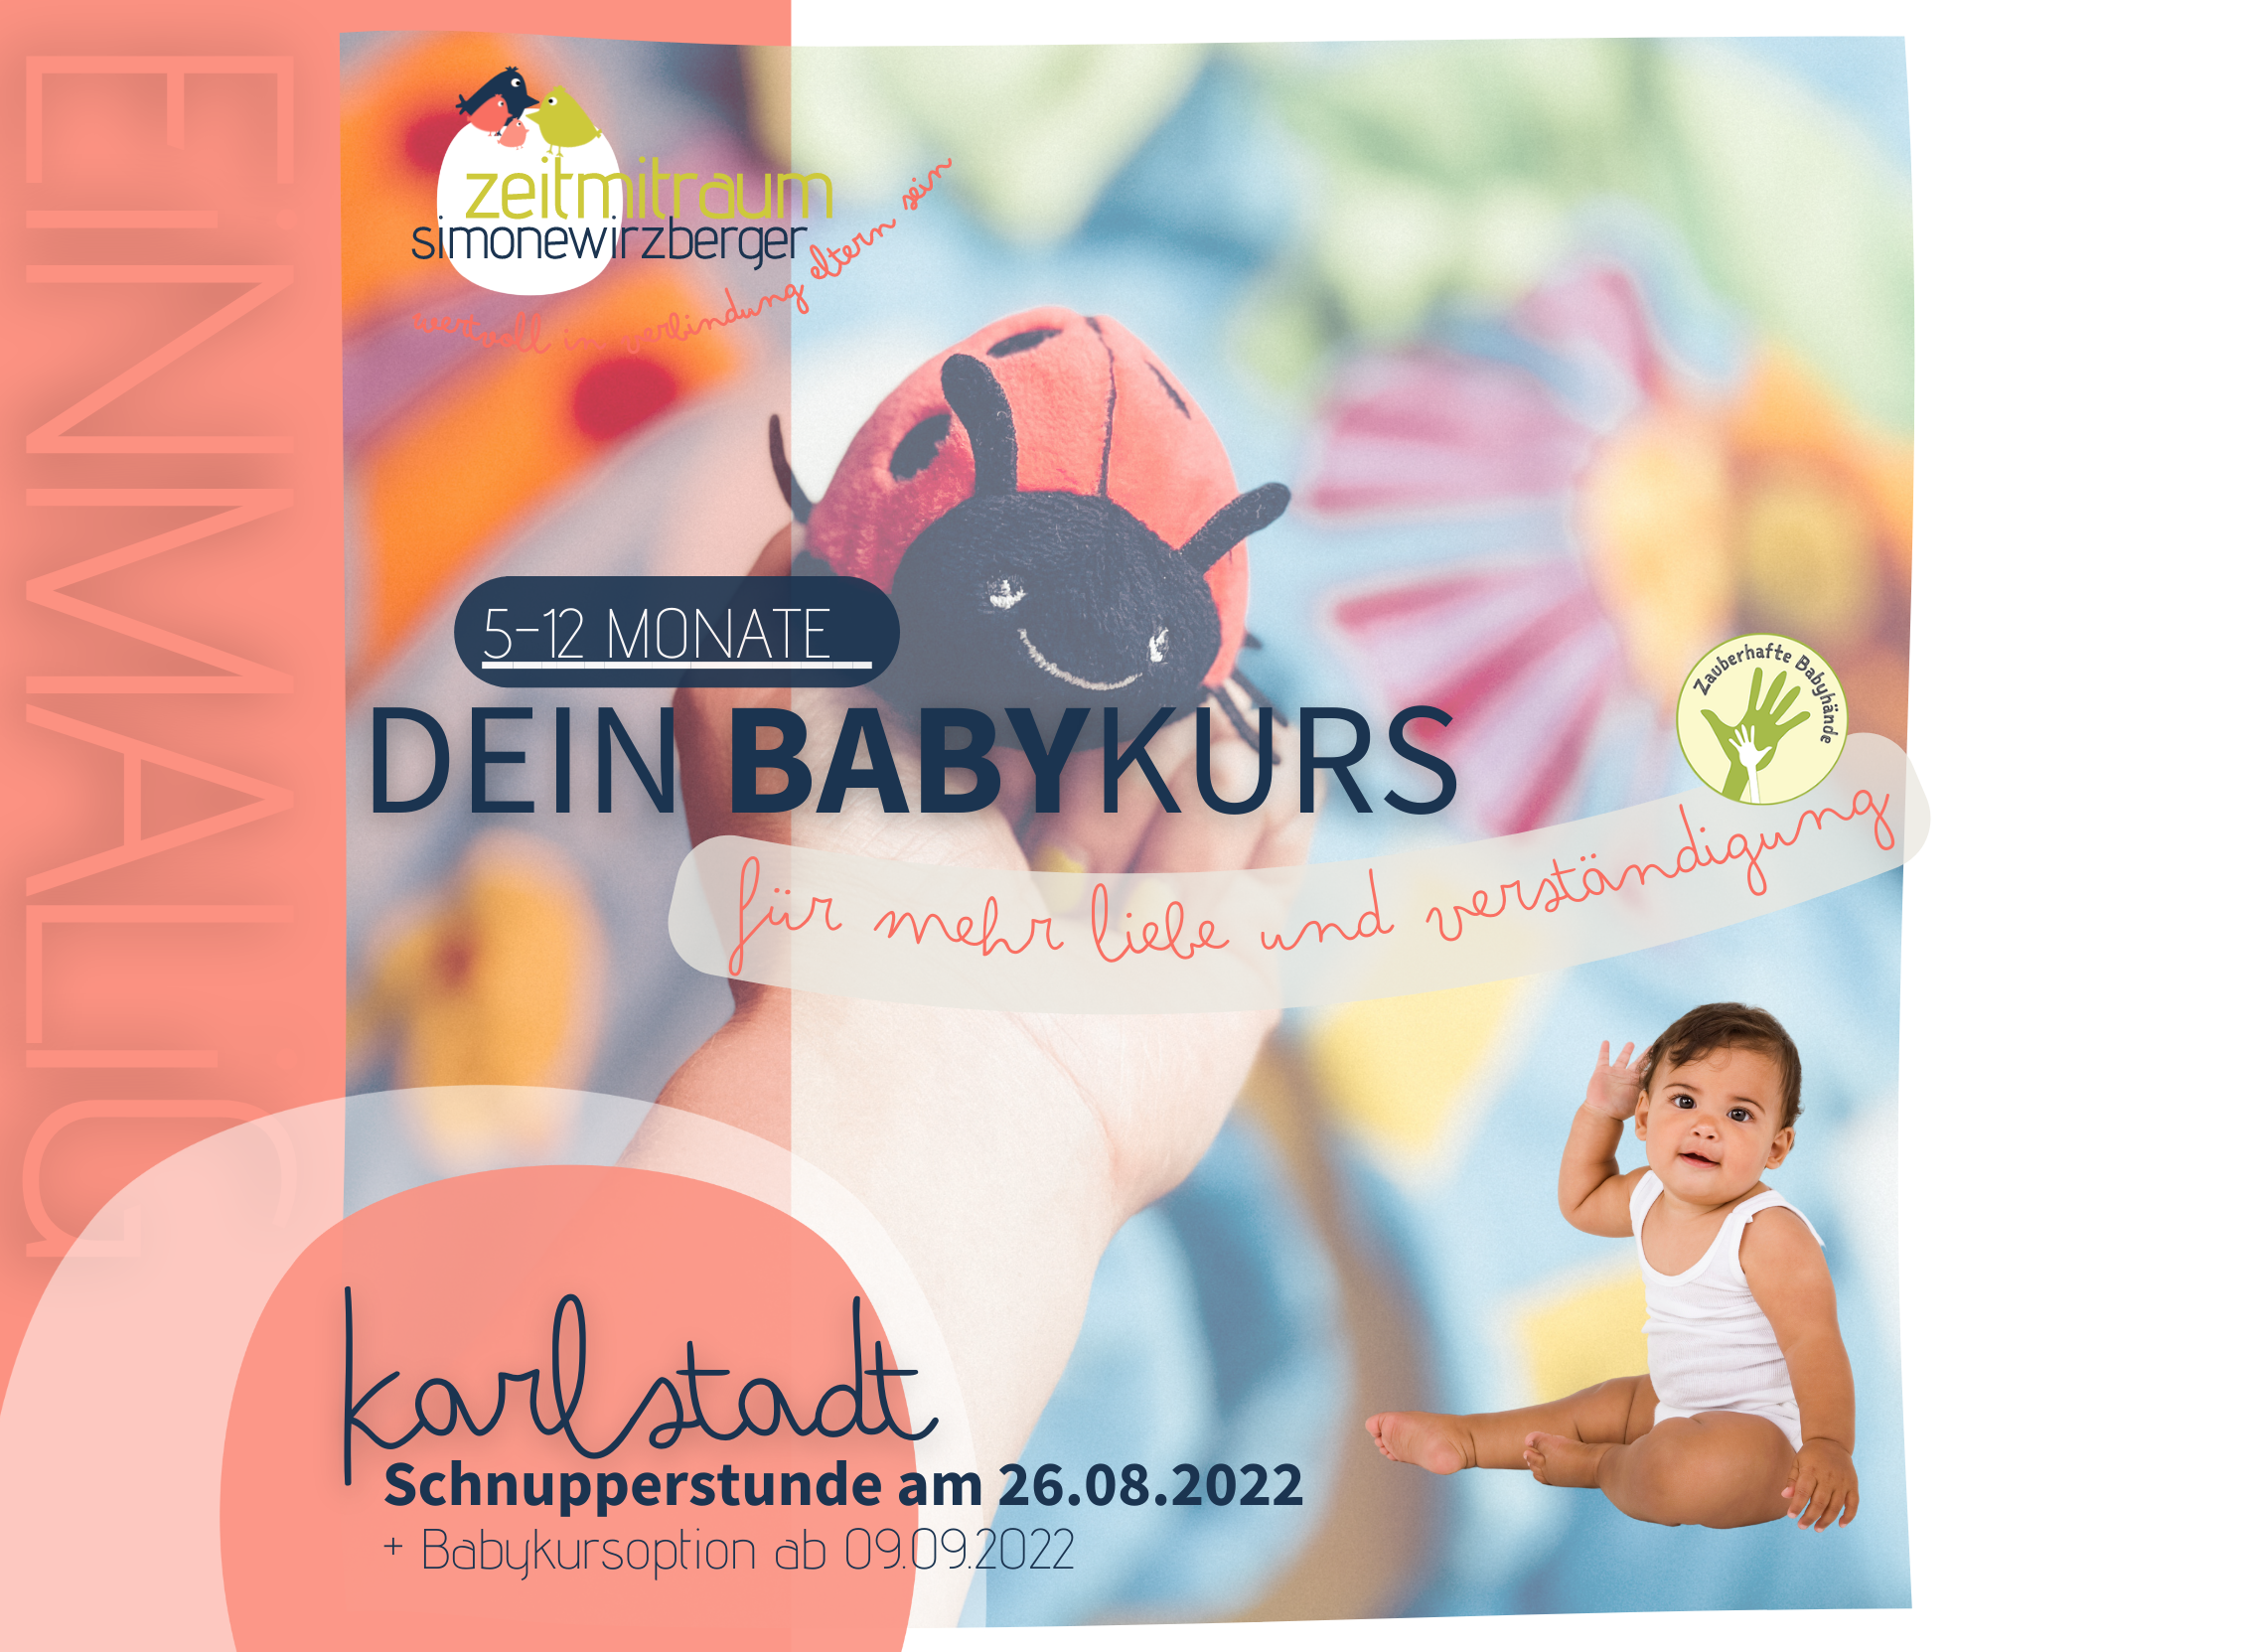 SCHNUPPERSTUNDE zu DEIN BABYKURS – Karlstadt [5-12 Monate]